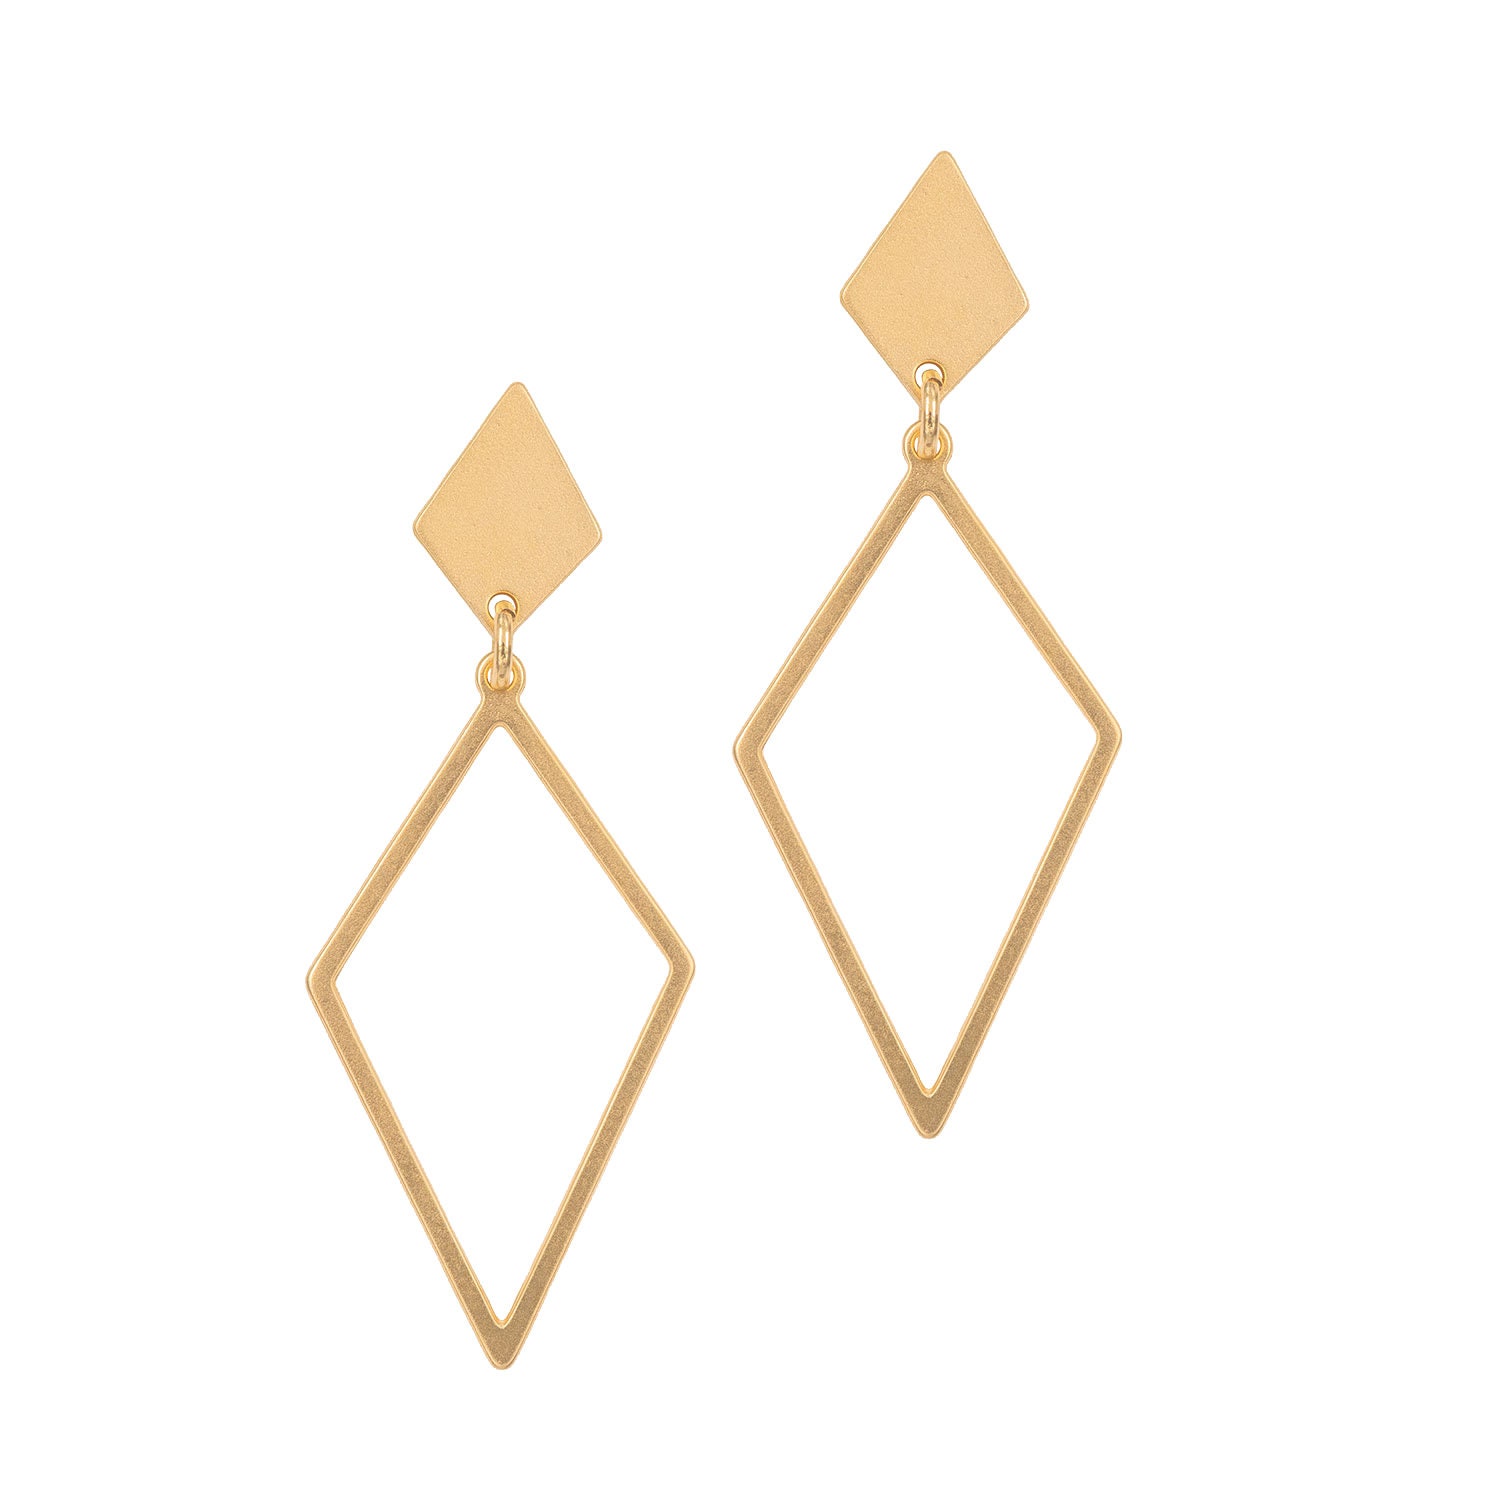 Gold Geometric Stud Earrings Diamond Shaped Earrings Long | Etsy